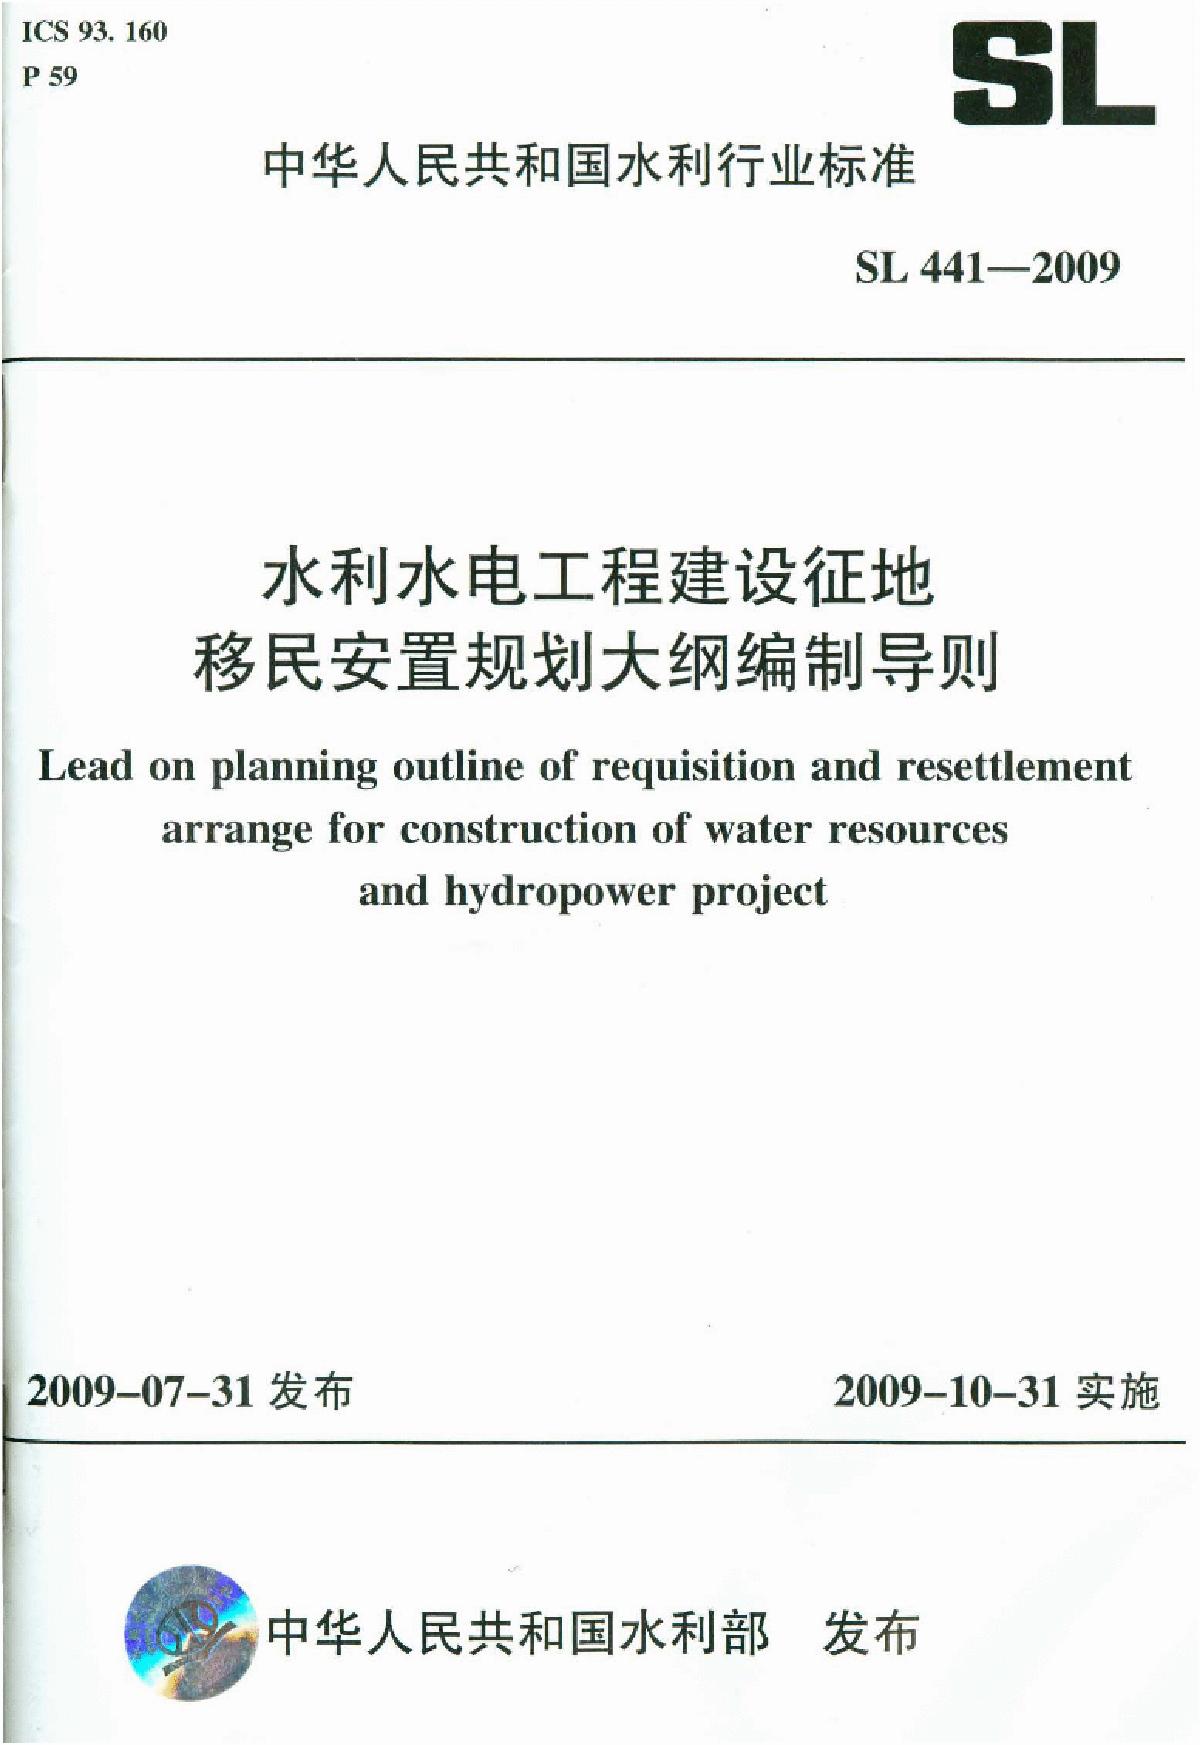 SL 441-2009 水利水电工程建设征地移民安置规划大纲编制导则